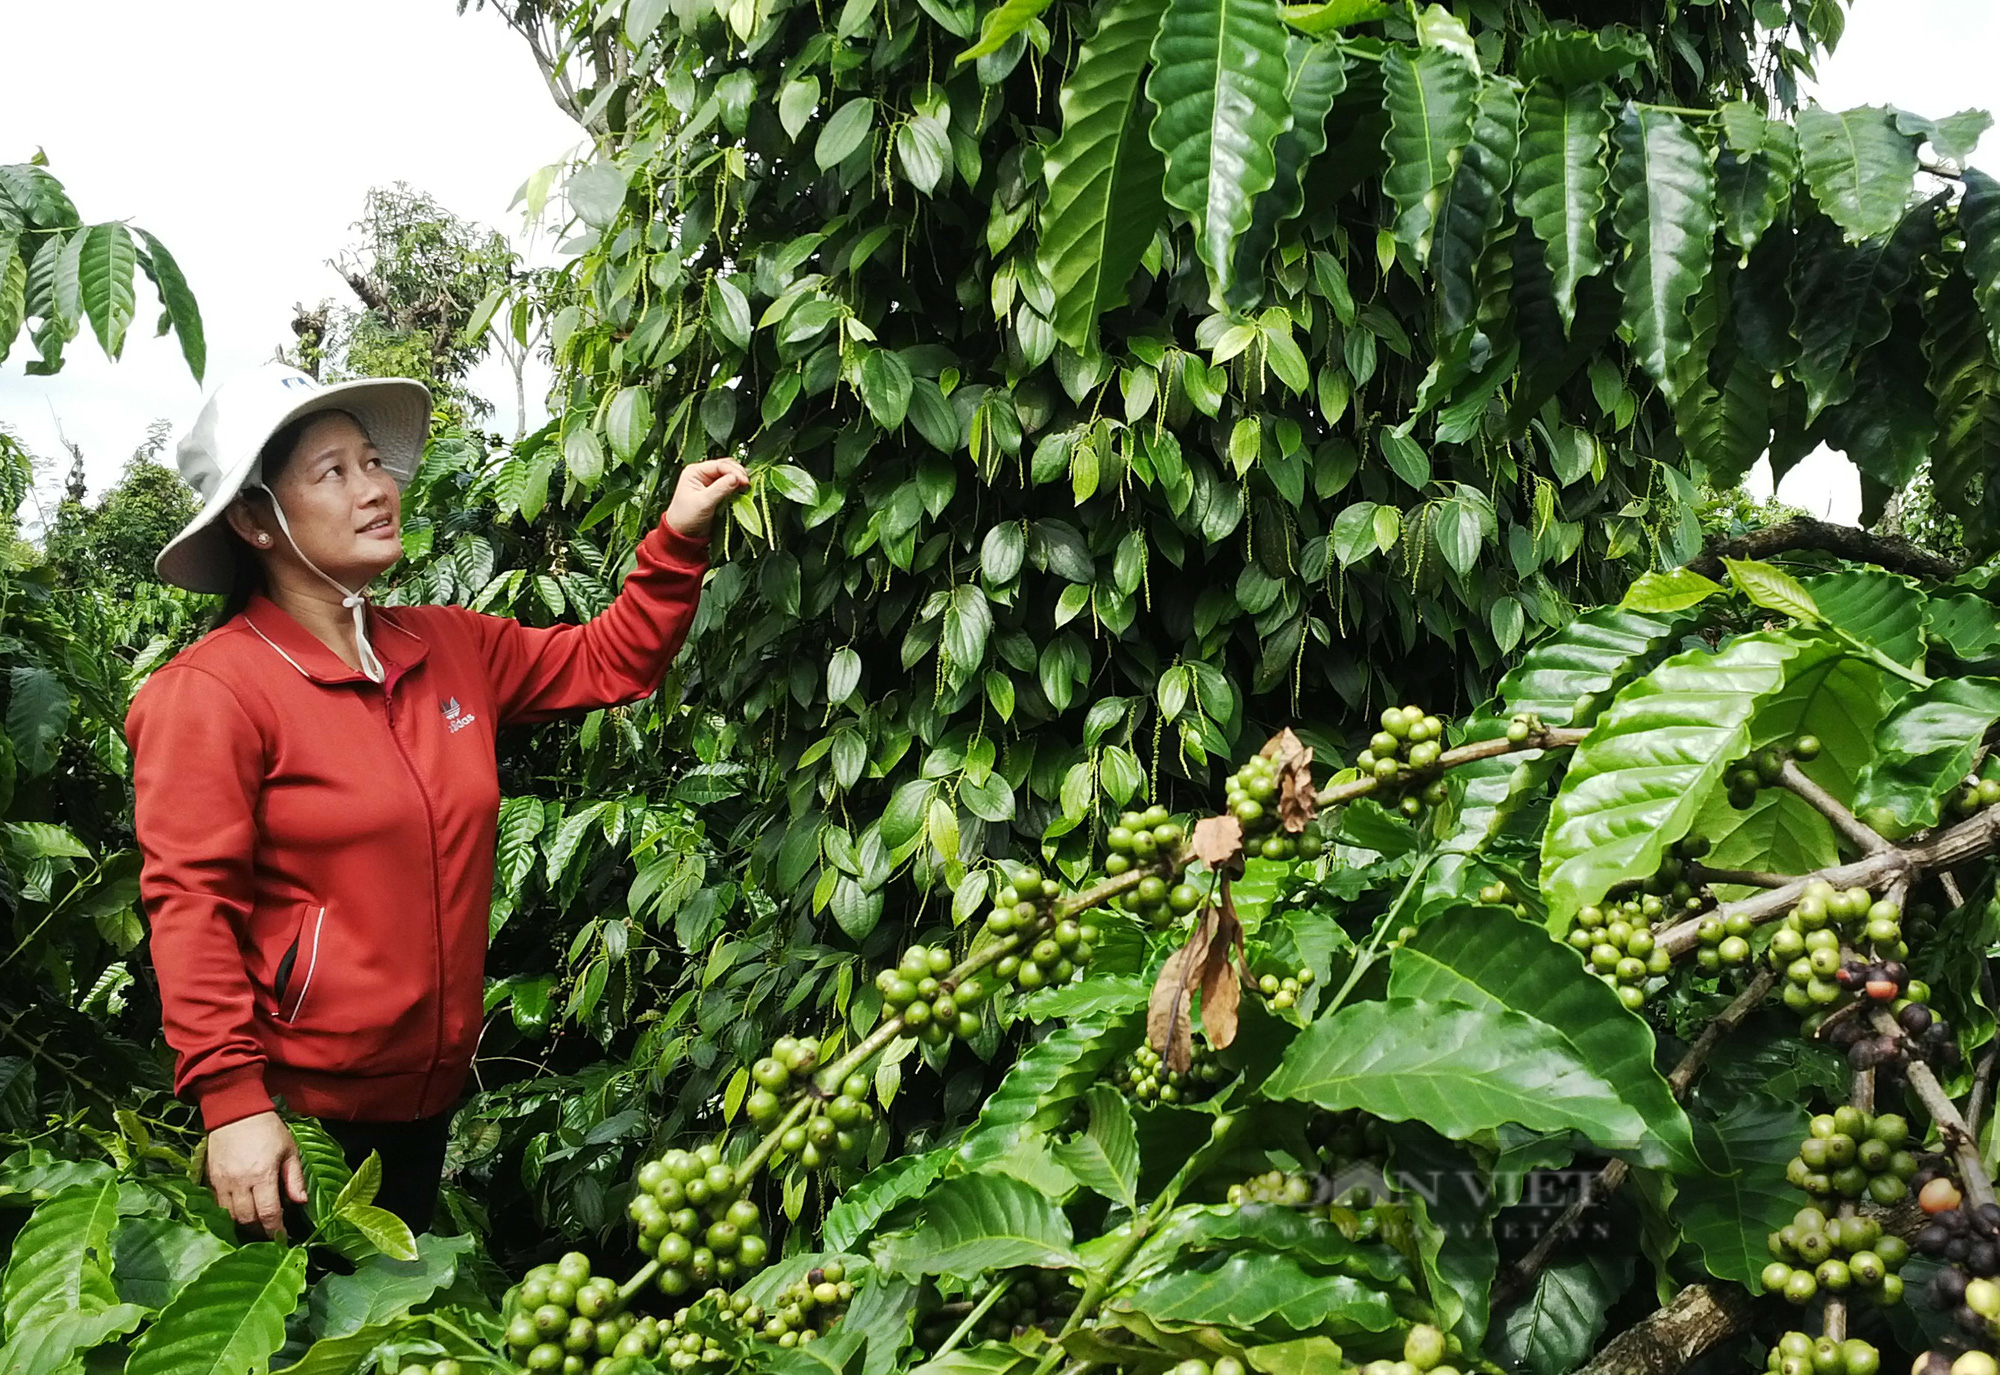 Giá cà phê tăng, nông dân kêu lỗ: Phân tích từ ngành nông nghiệp - Ảnh 3.